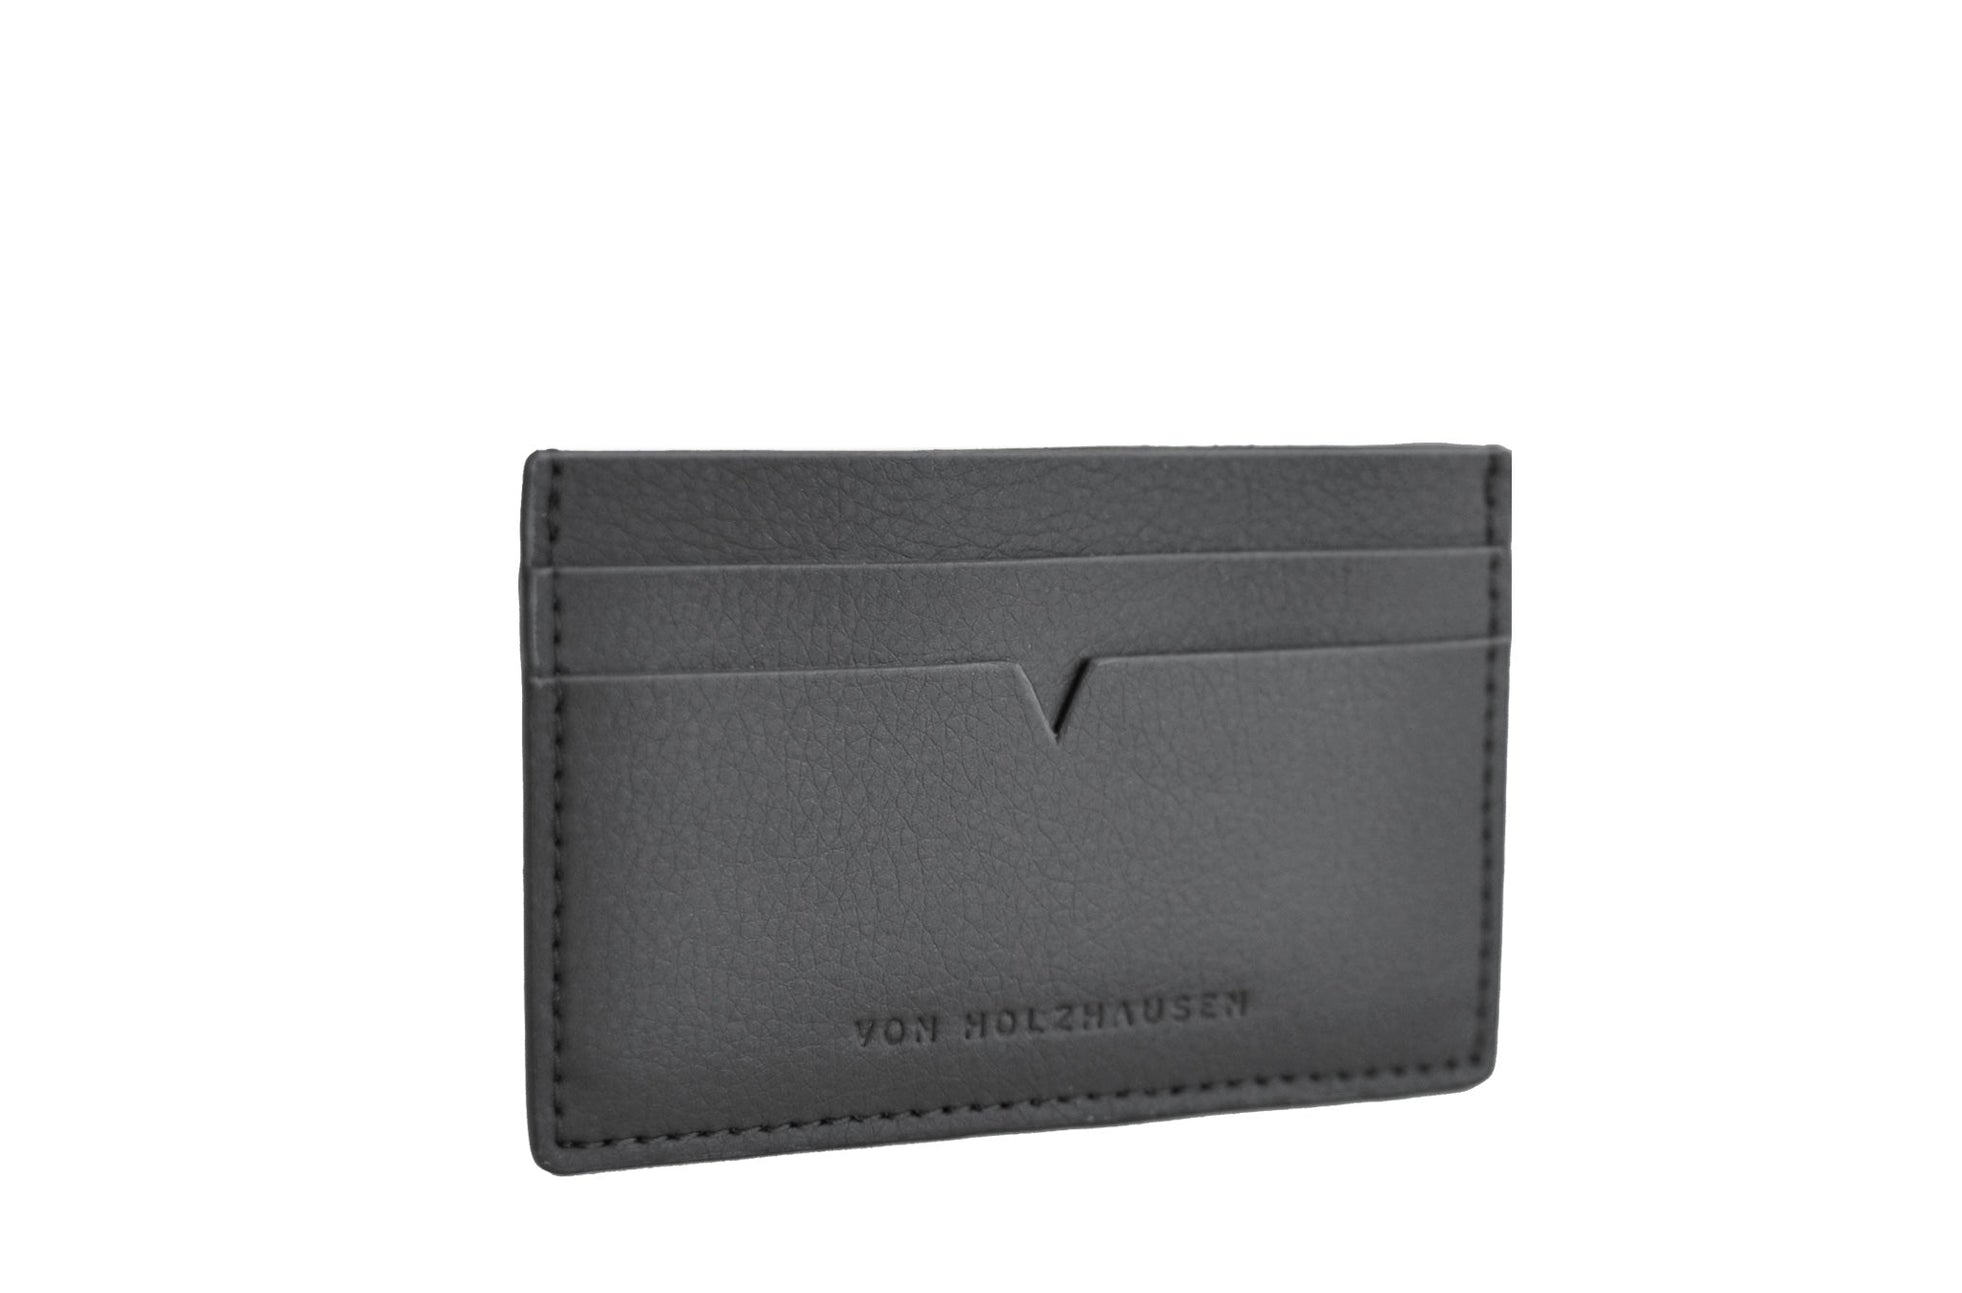 The Credit Card Holder - Sample Sale in Technik in Black image 5